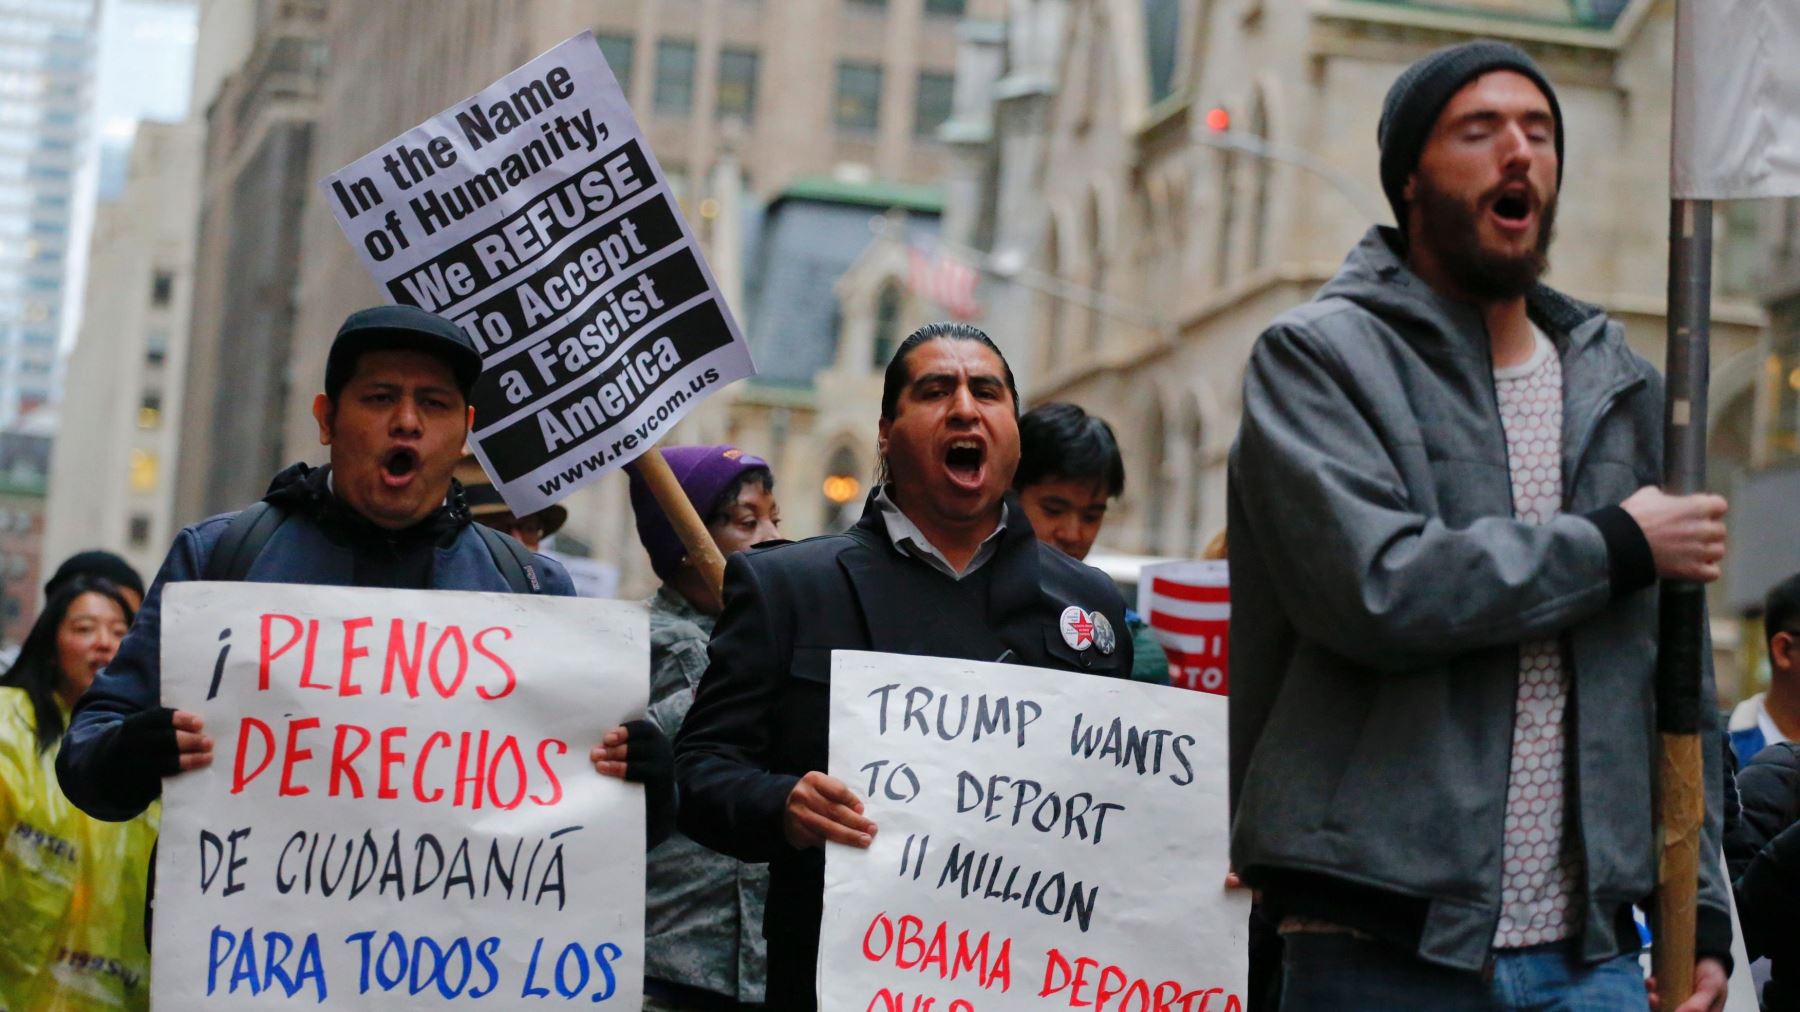 La situación de los migrantes en Estados Unidos es grave, afirman. Foto:AFP